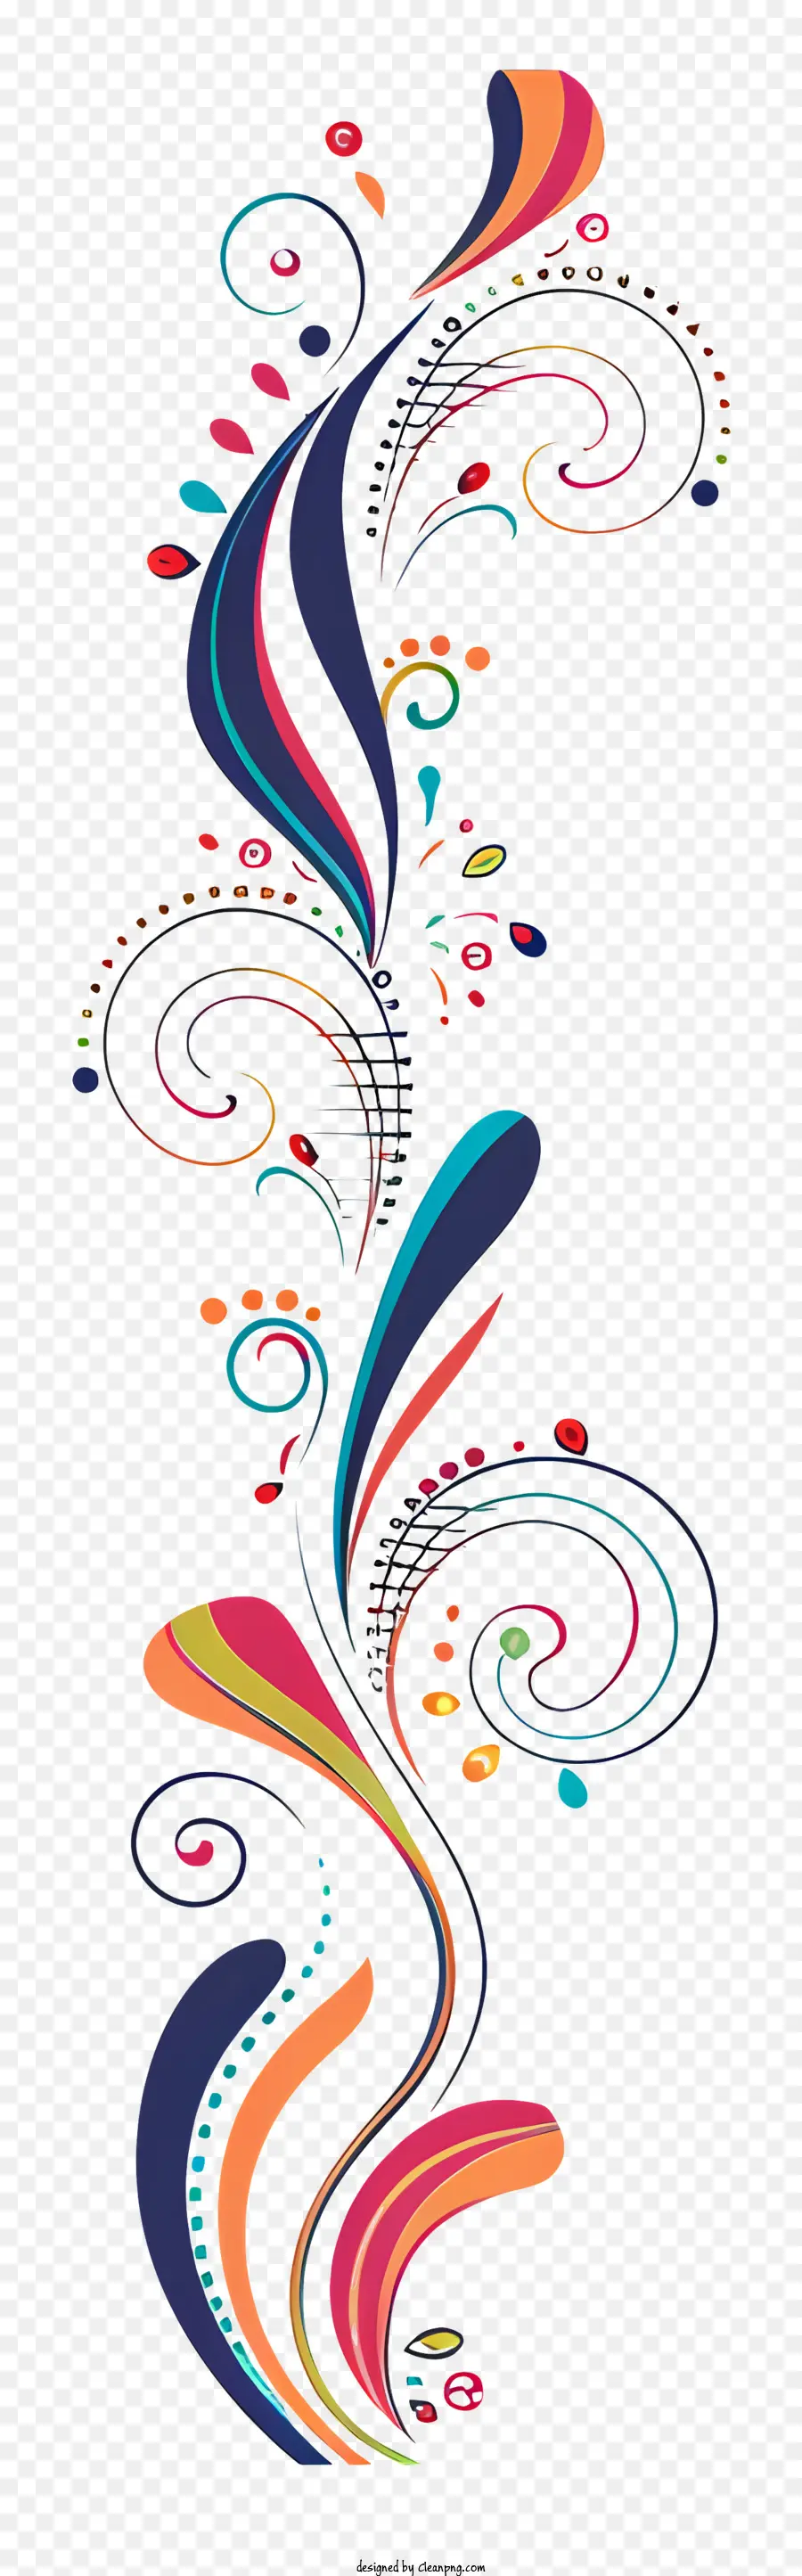 Ausgefallene dekorative Linie abstrakte Kunst farbenfrohe Wirbel kreisförmige Design -Verdrehungsmuster - Farbenfrohes wirbelnde Design mit Energie und Bewegung